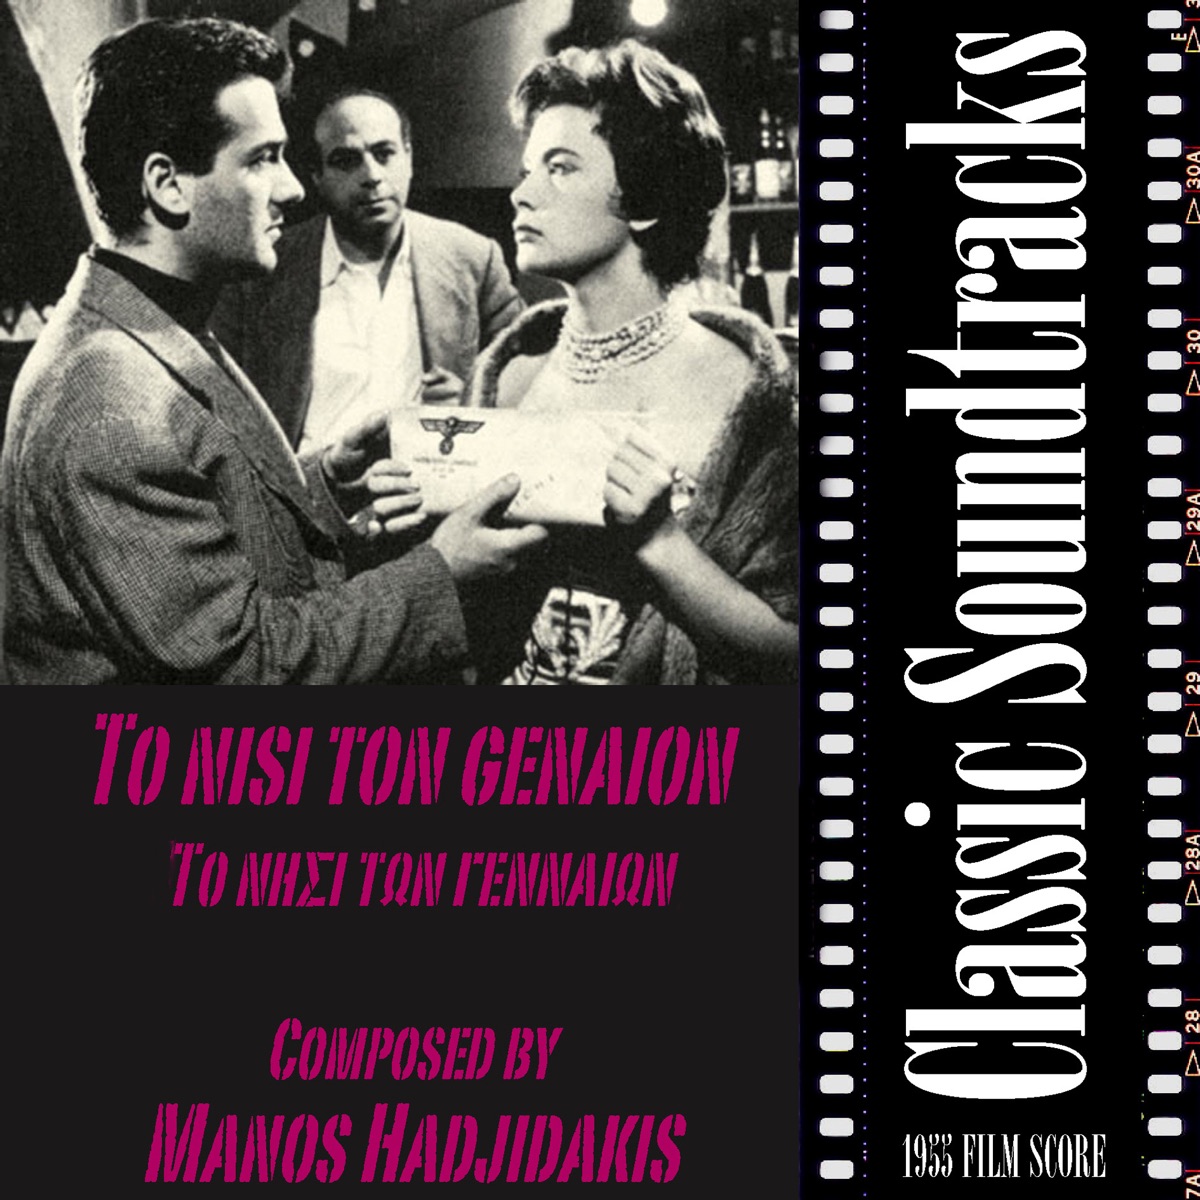 Mia zoi tin exoume (1958 Film Score) [Mια ζωή την έχουμε] - Album by Manos  Hadjidakis Ensemble - Apple Music